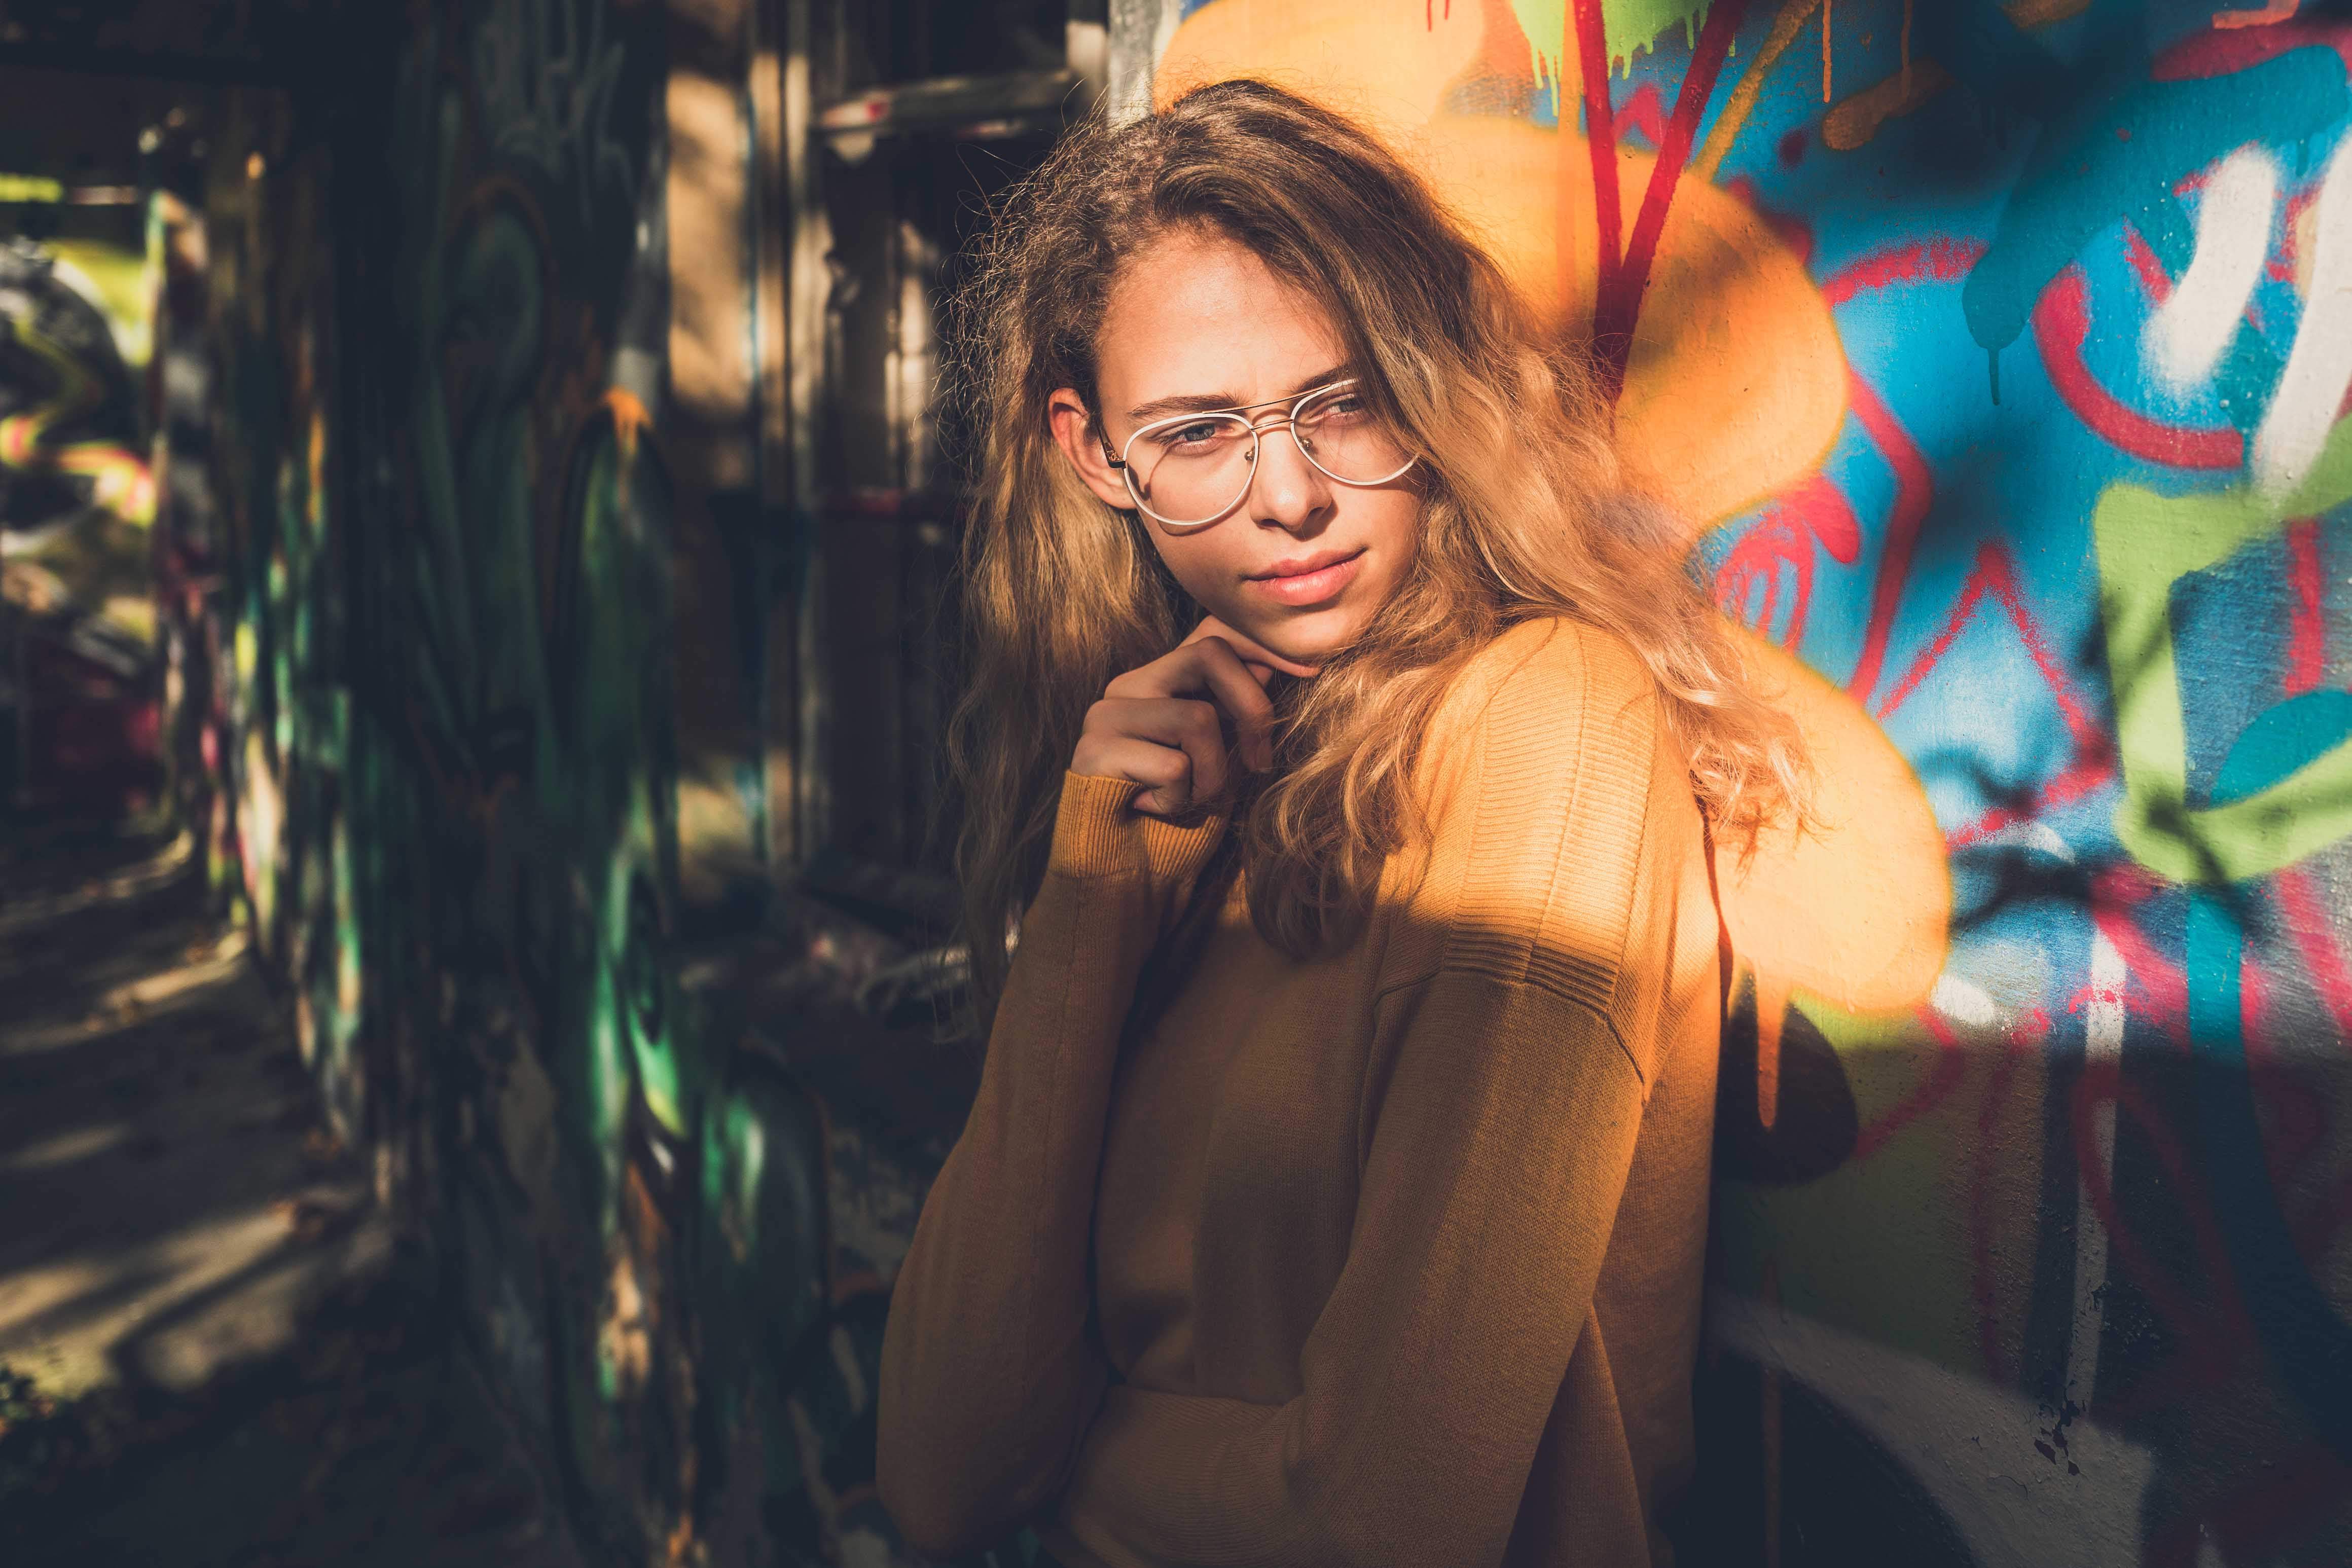 Portraitaufnahme einer Frau, die vor einer farbenfrohen Graffiti-Wand steht. Die Person trägt einen langärmeligen orangen Pullover. Die Graffiti im Hintergrund sind lebhaft und zeigen verschiedene Farben und abstrakte Formen. Es scheint, dass das Sonnenlicht von einer Seite auf die Person scheint, was einen Kontrast von Licht und Schatten erzeugt.